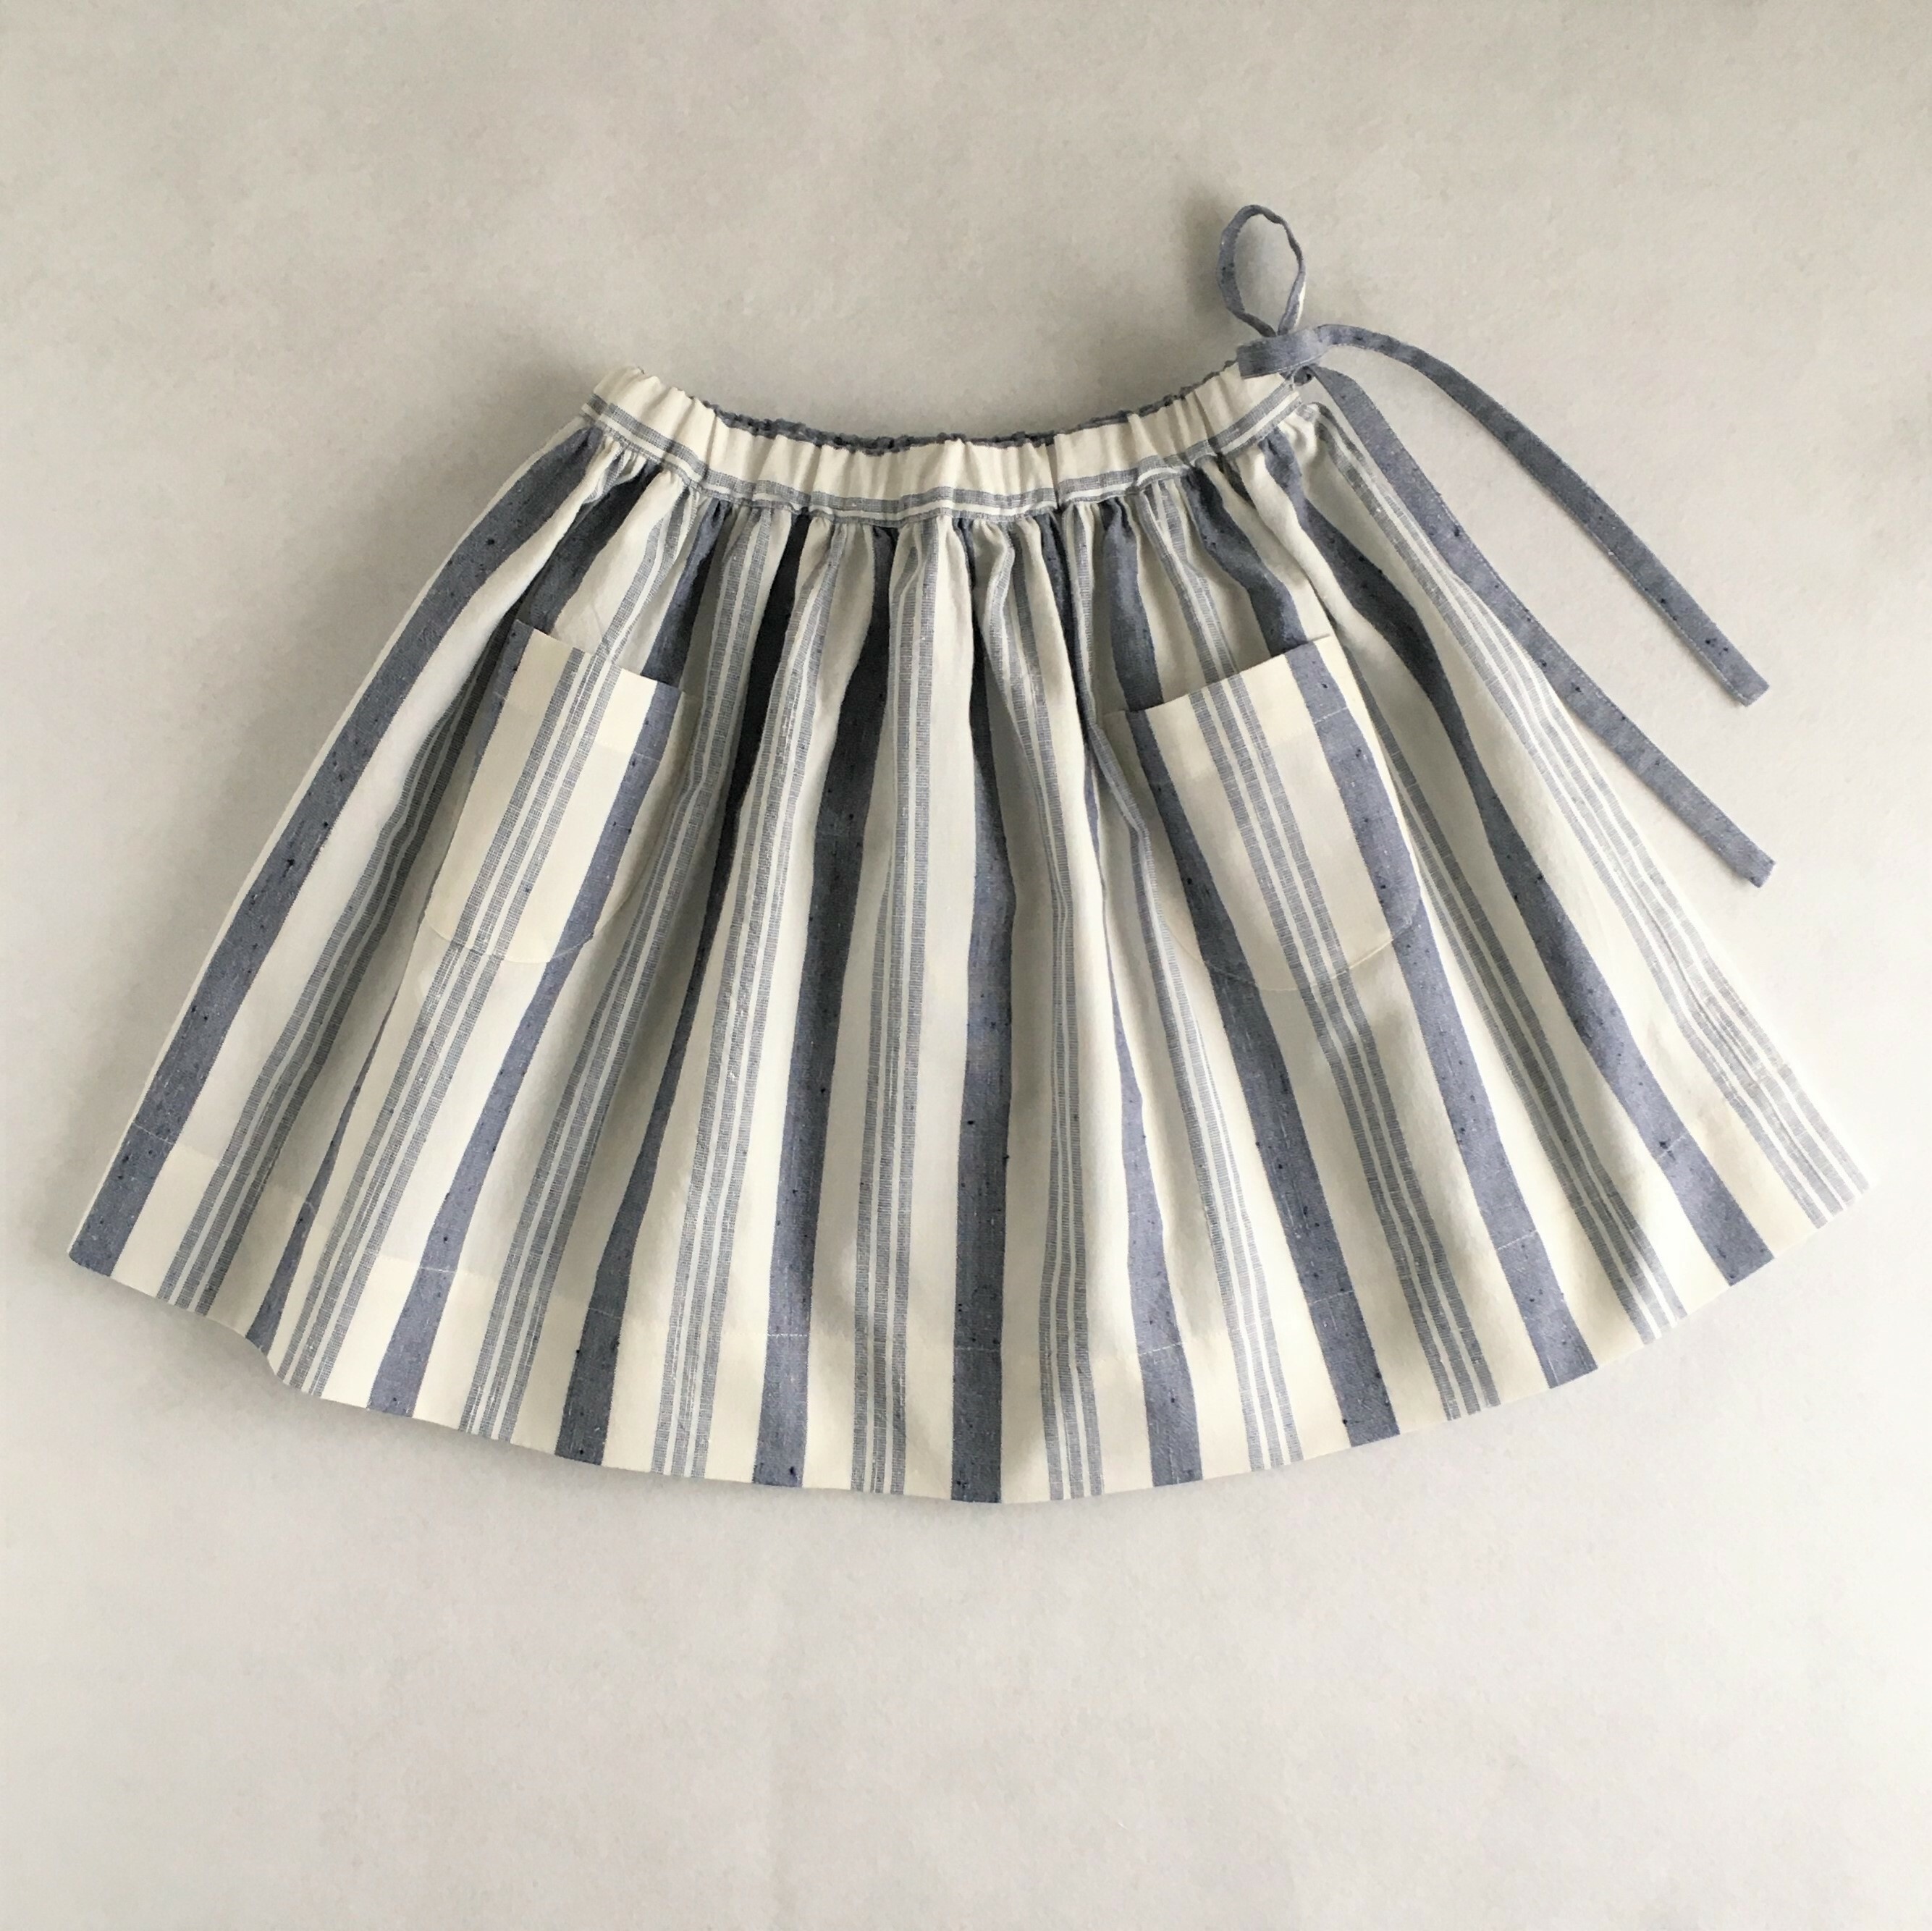 ギャザースカート 70 130サイズ 型紙 作り方のセット To Bo 1905 Ki Bo 1905 子供服の型紙ショップ Tsukuro ツクロ